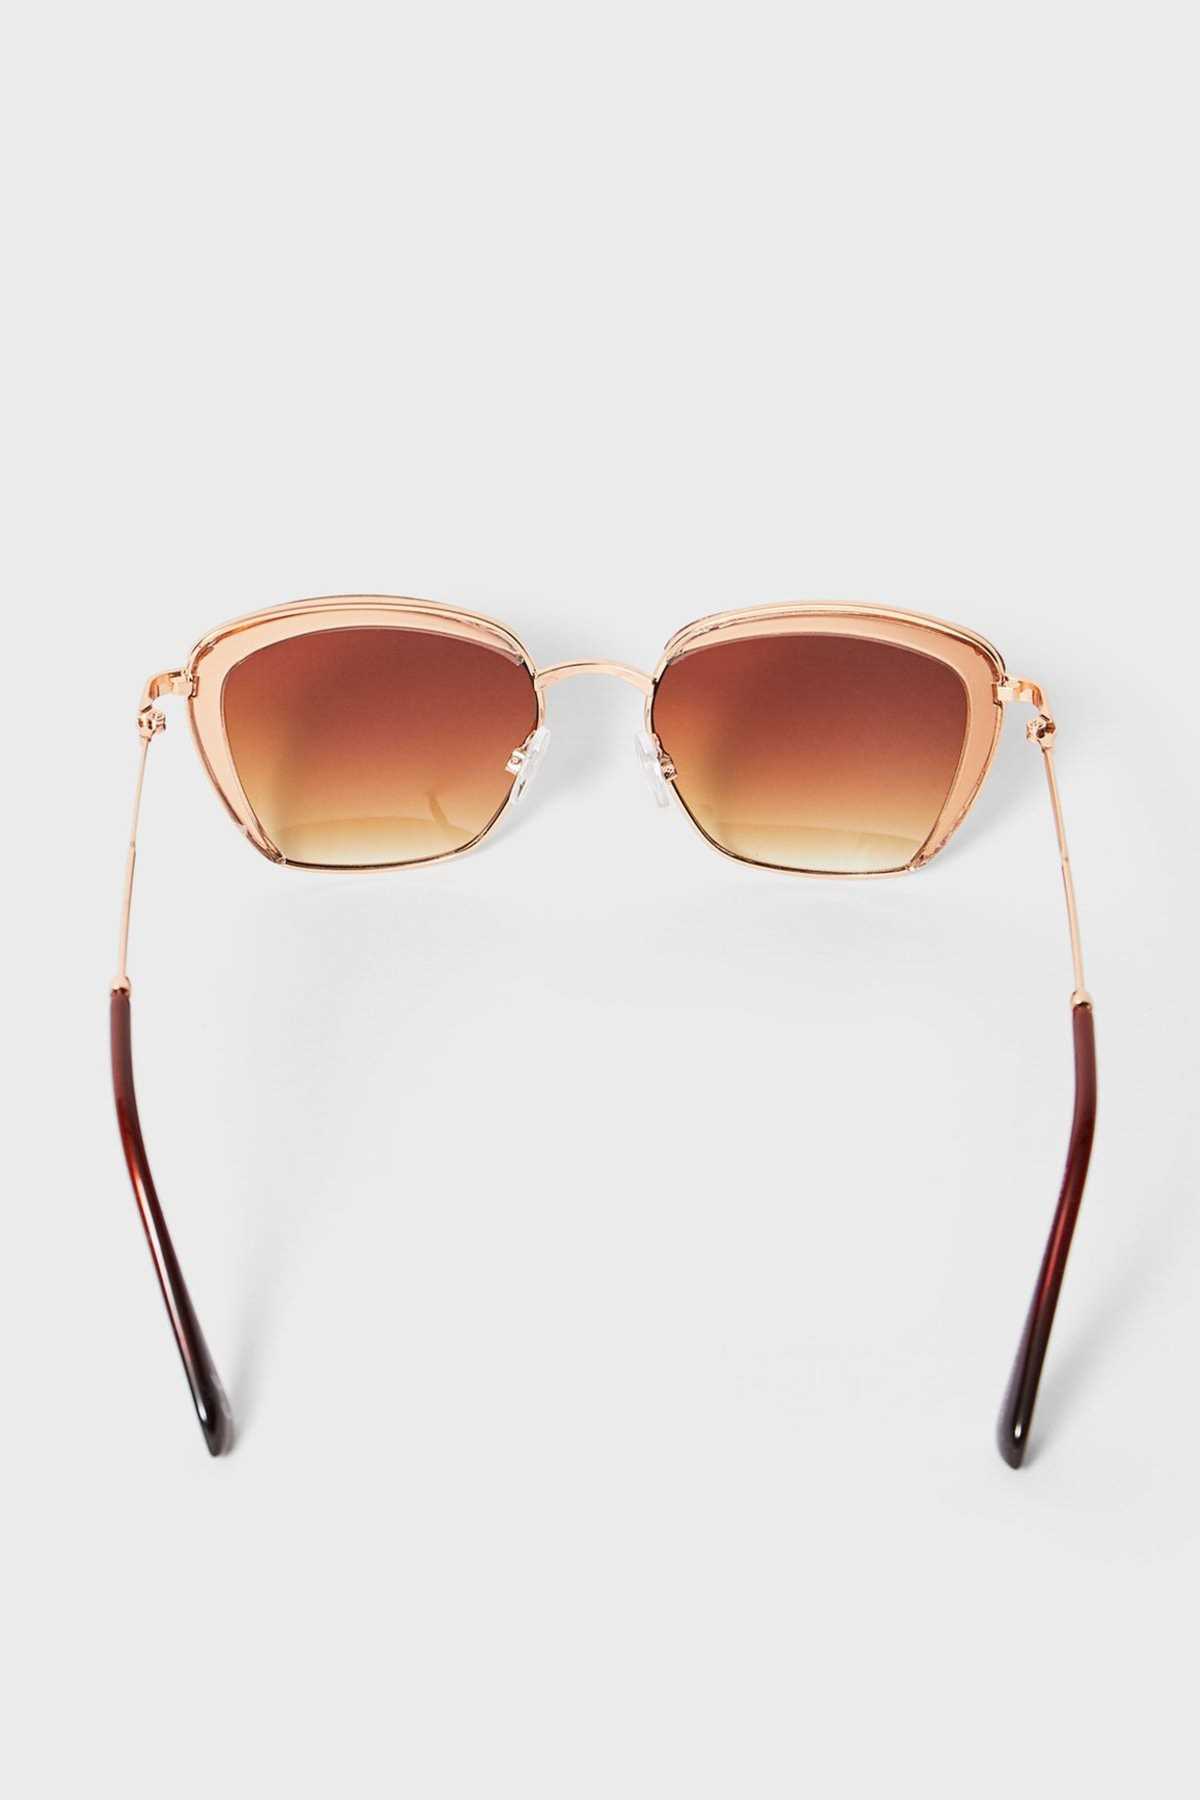 خرید عینک آفتابی 2020 زنانه برند Stradivarius رنگ صورتی ty42618805